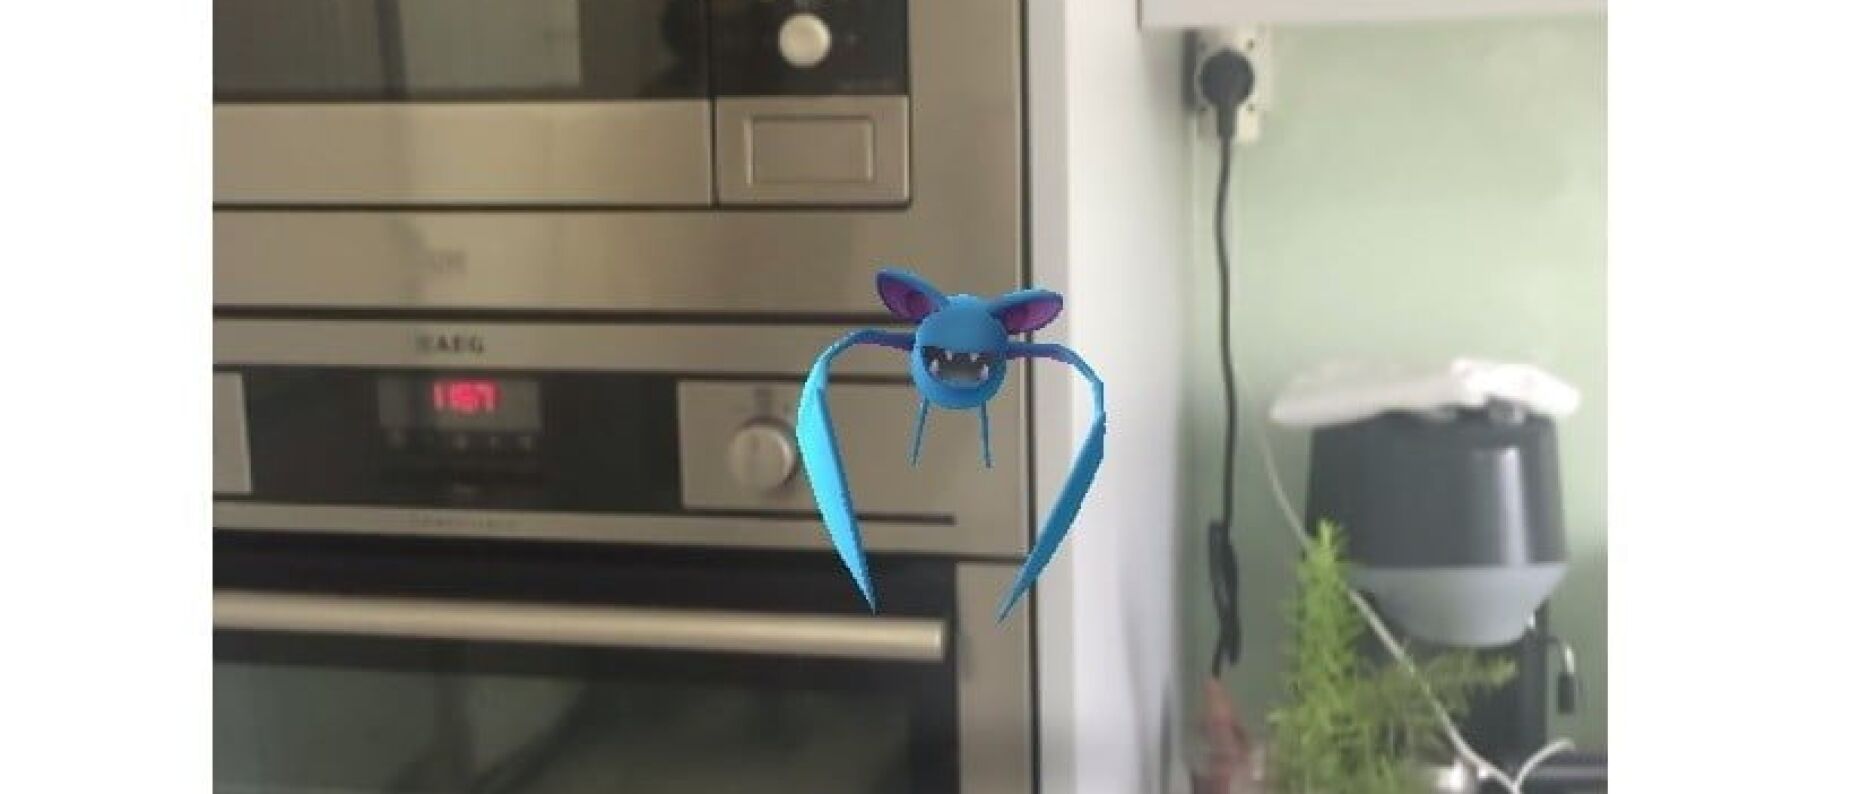 Notícia de última hora : Pokémon Go na cozinha da Teleculinária